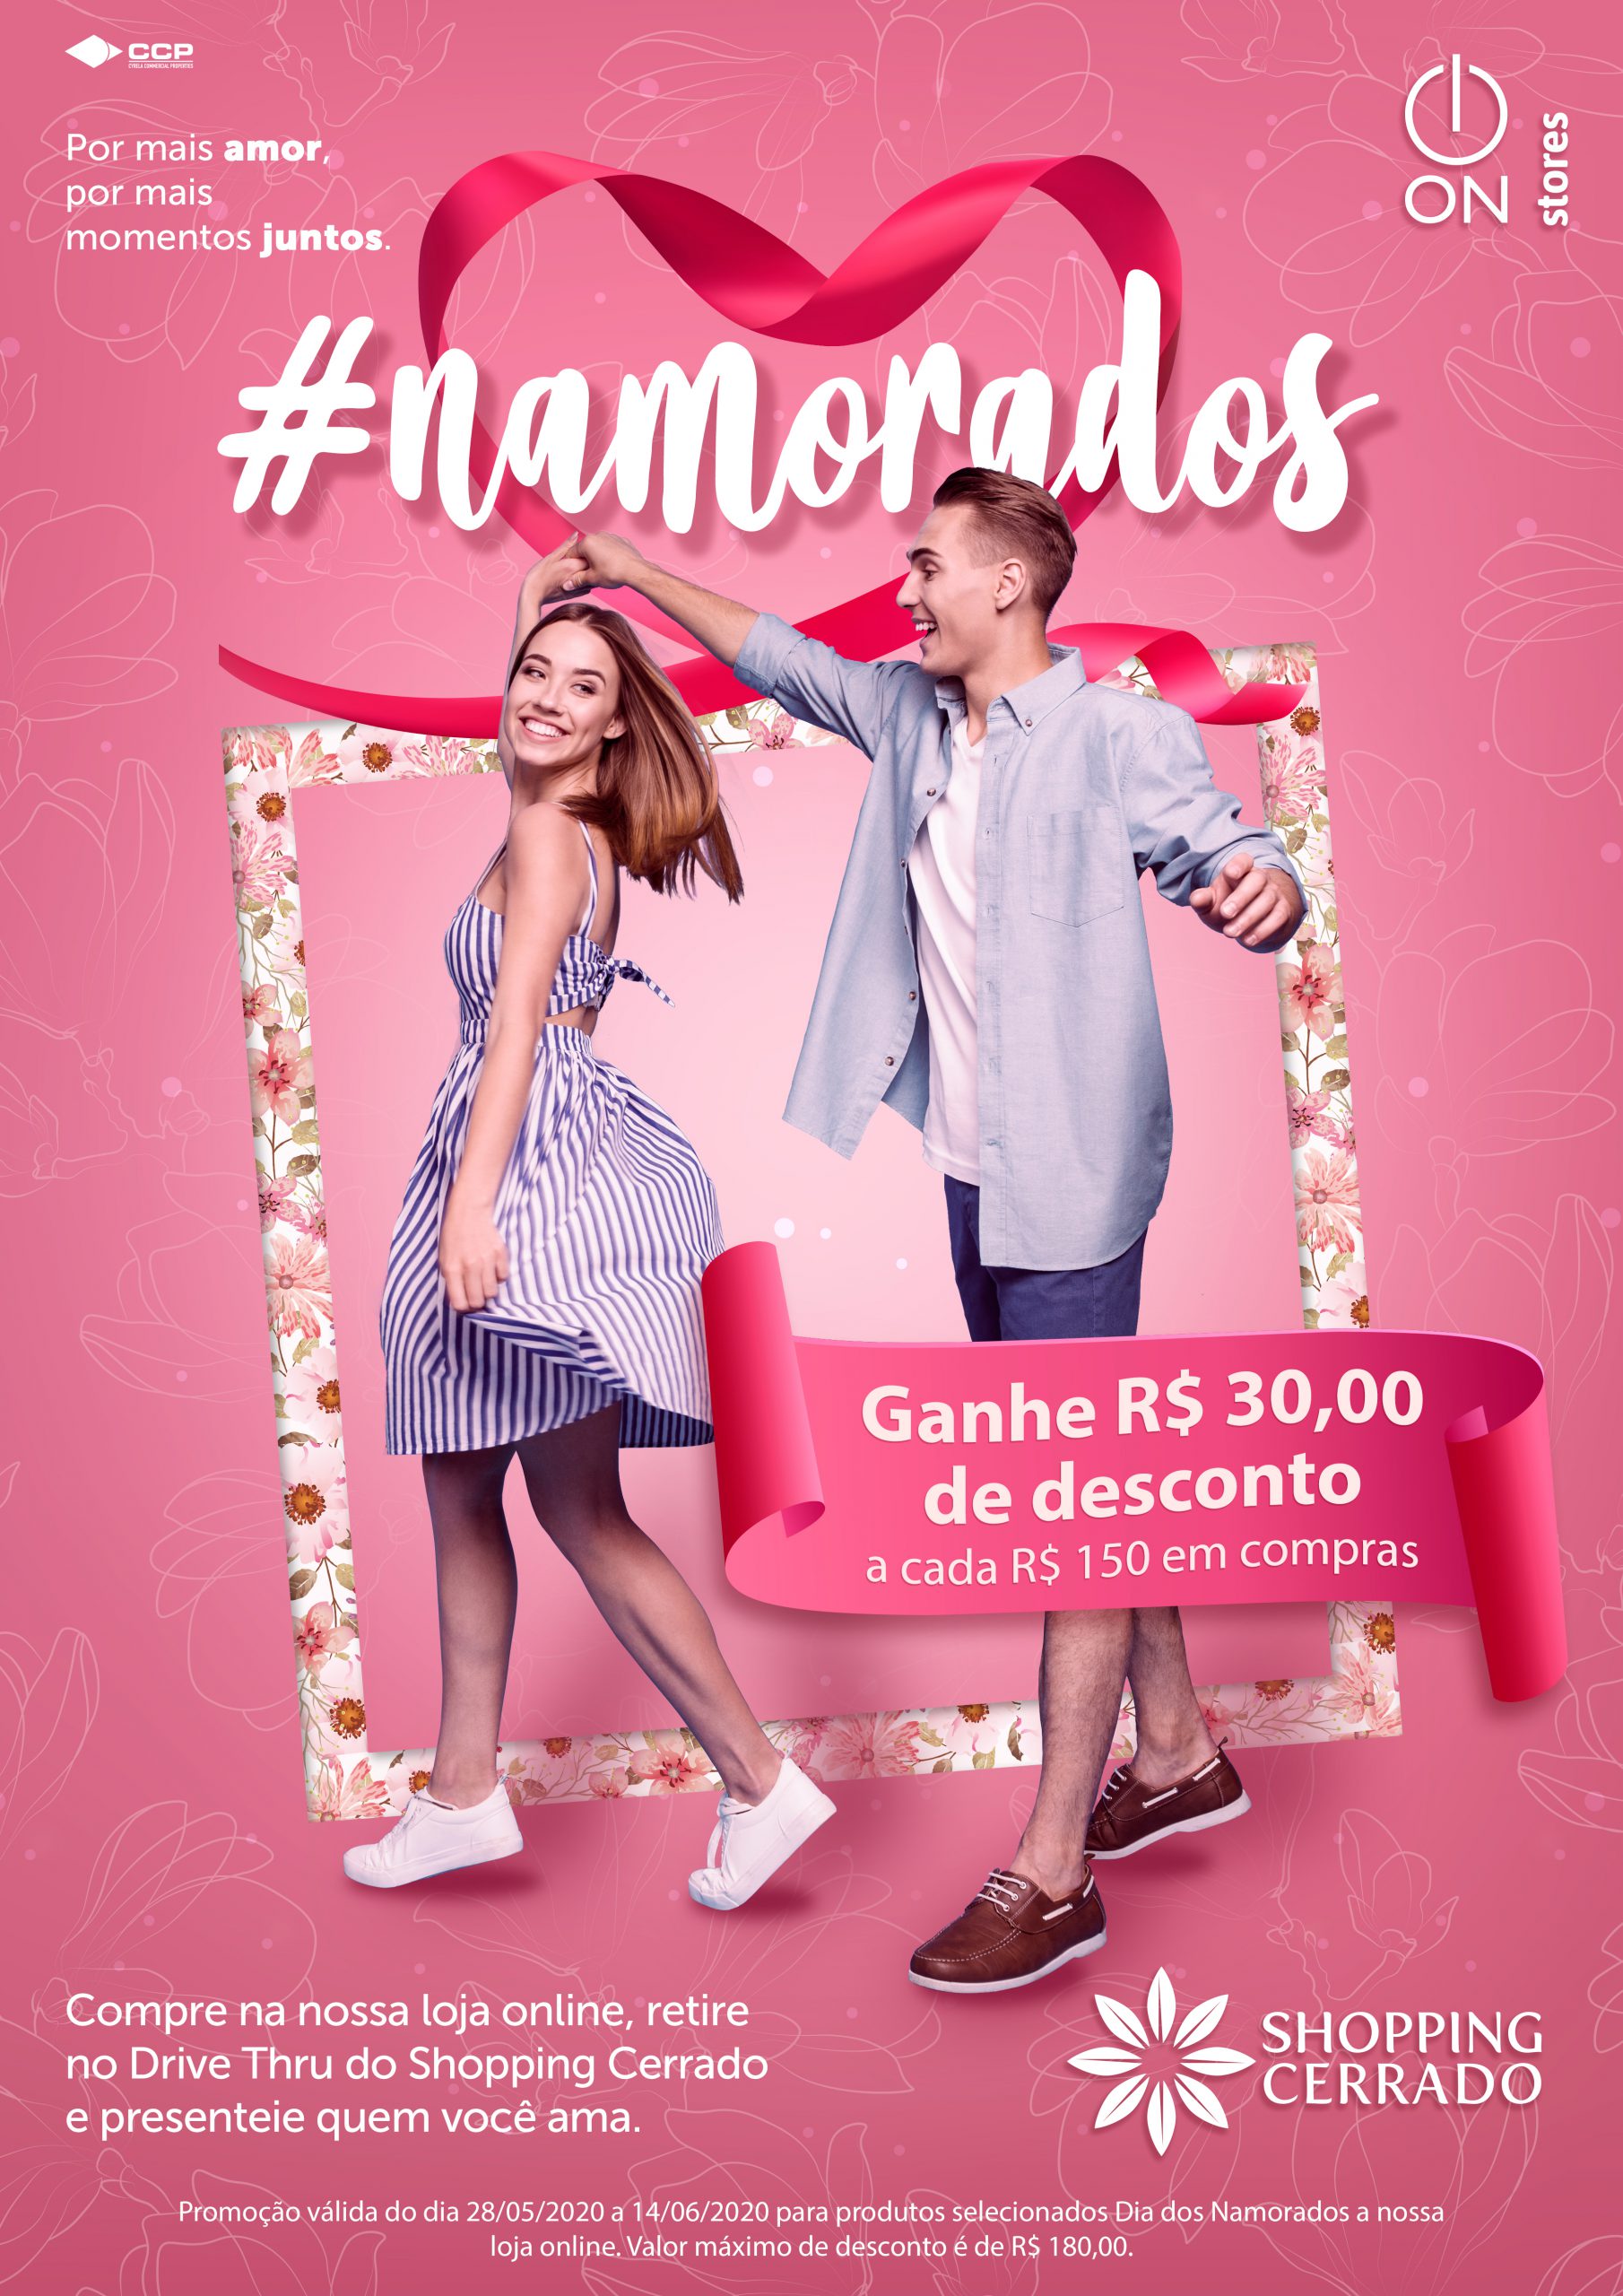 No momento você está vendo Shopping Cerrado lança campanha do Dia dos Namorados